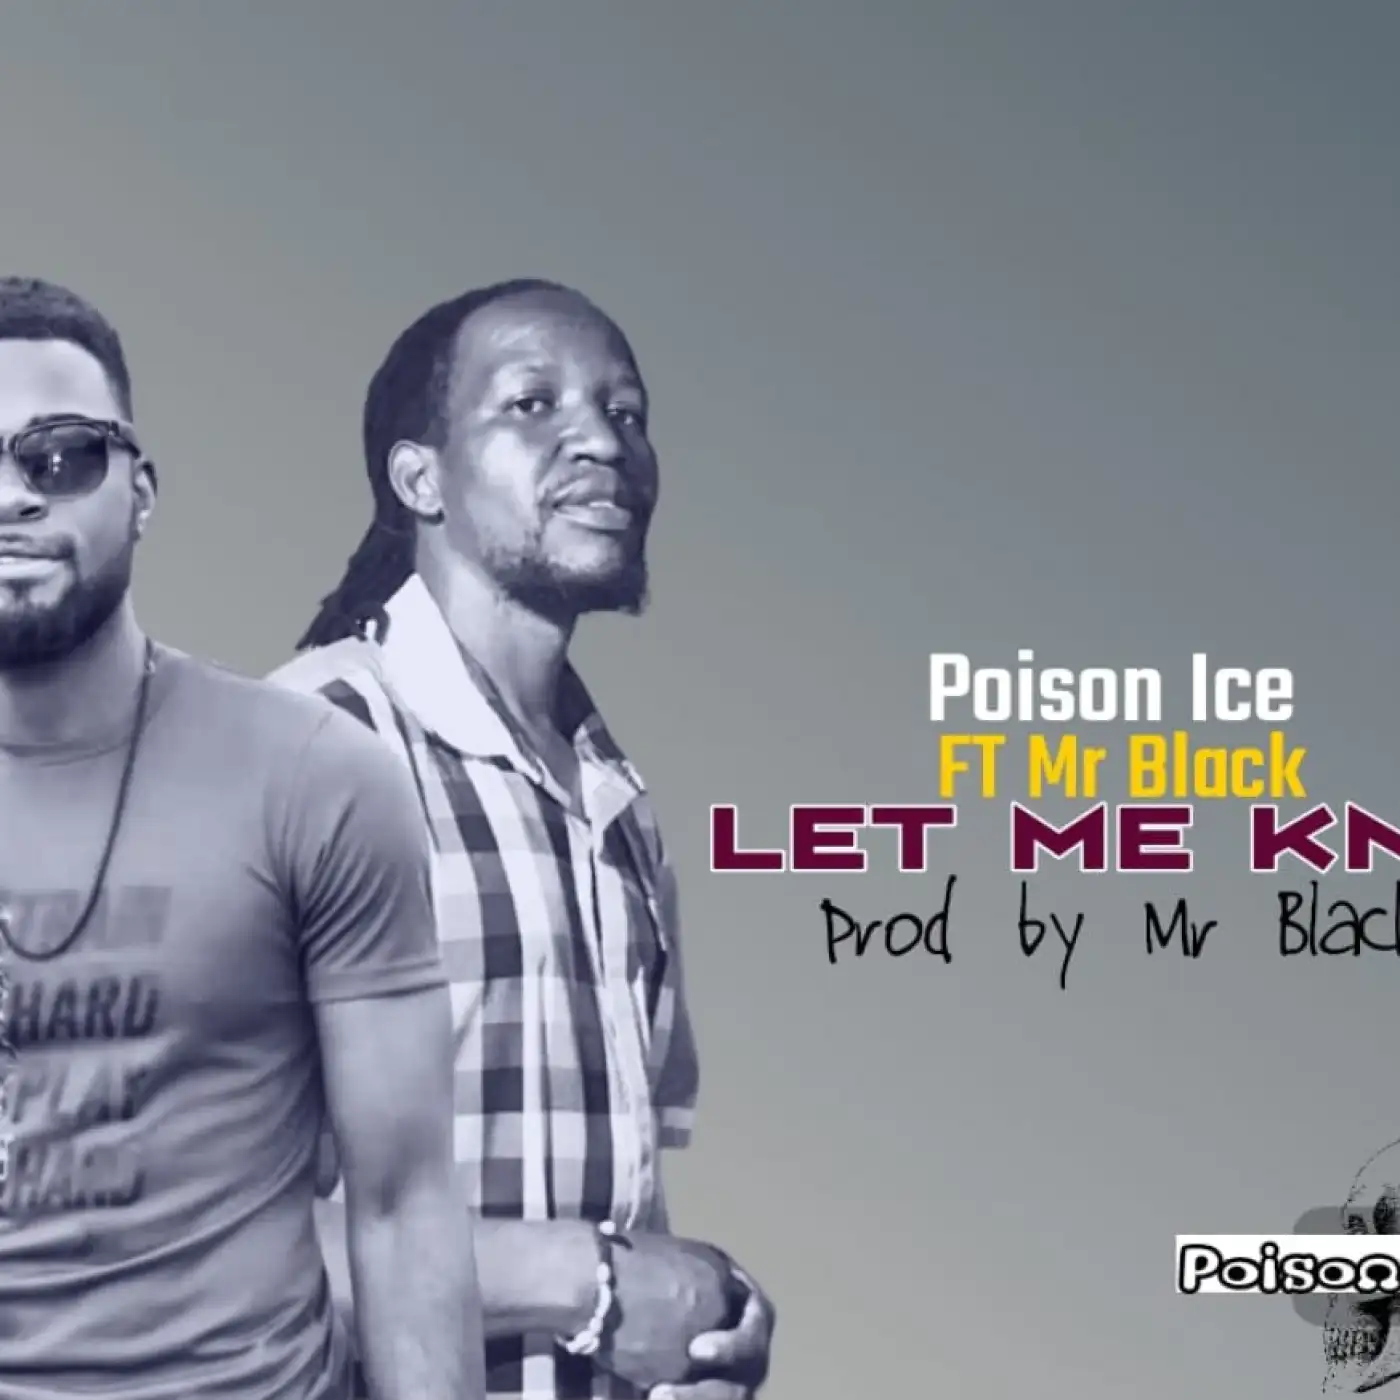 poison-ice-let-me-know-ft-mr-black-prod-mr-black-mp3-download-mp3 download